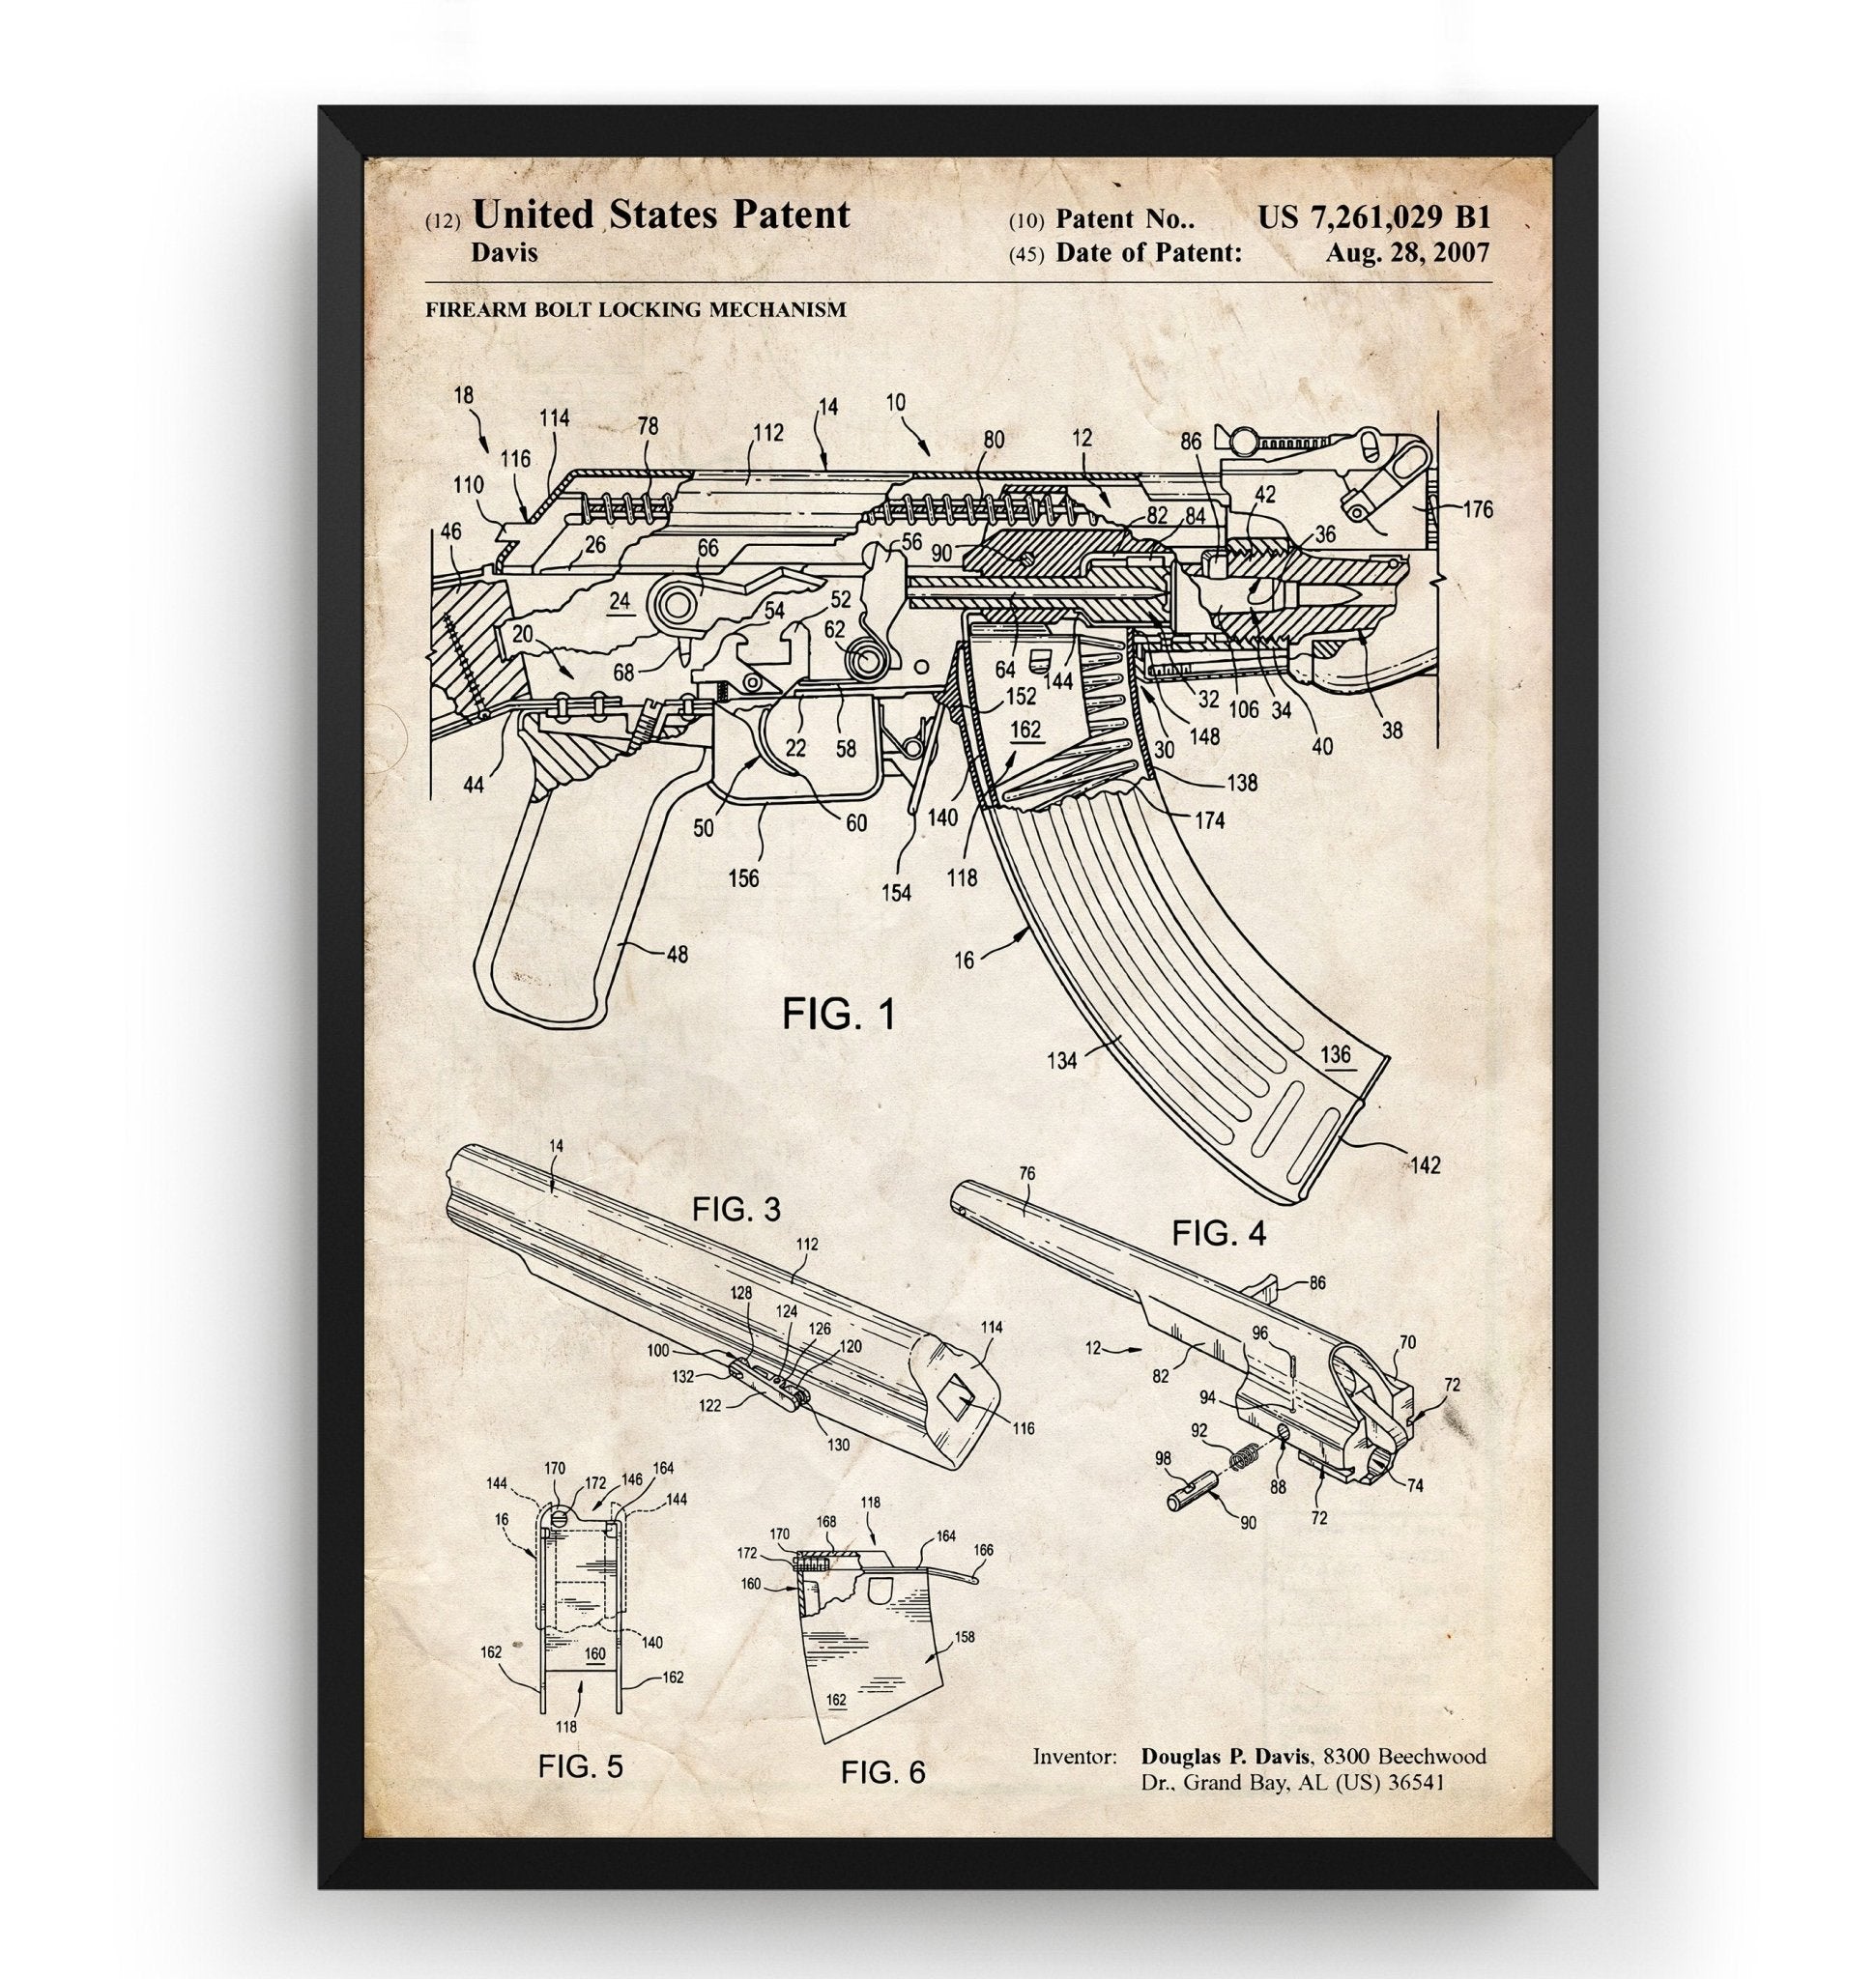 AK-47 Rifle 2007 Patent Print - Magic Posters